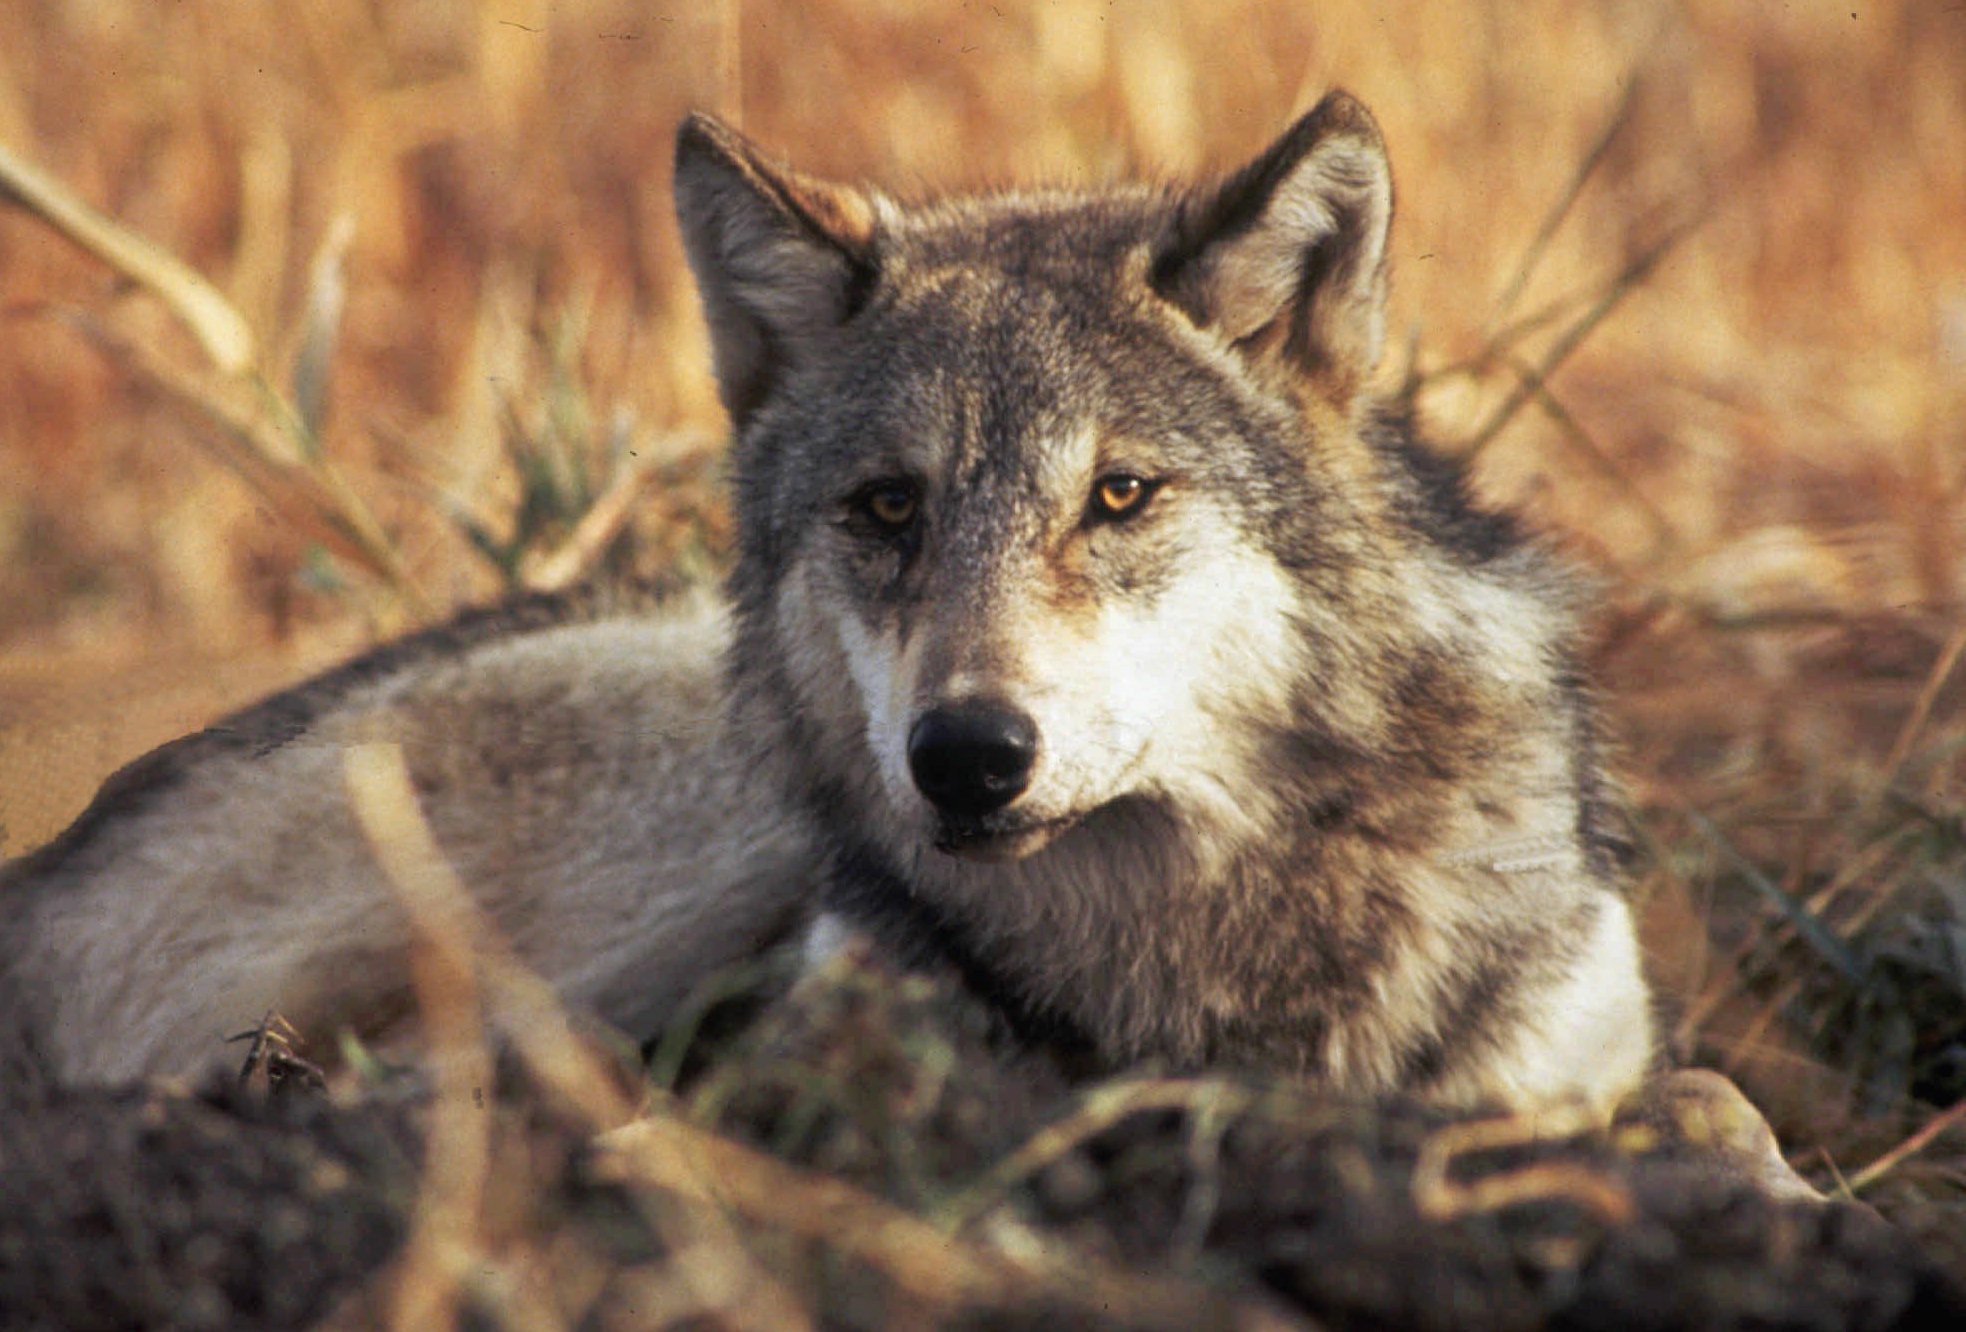 Din mening: Bør det være lovligt at skyde ulve?